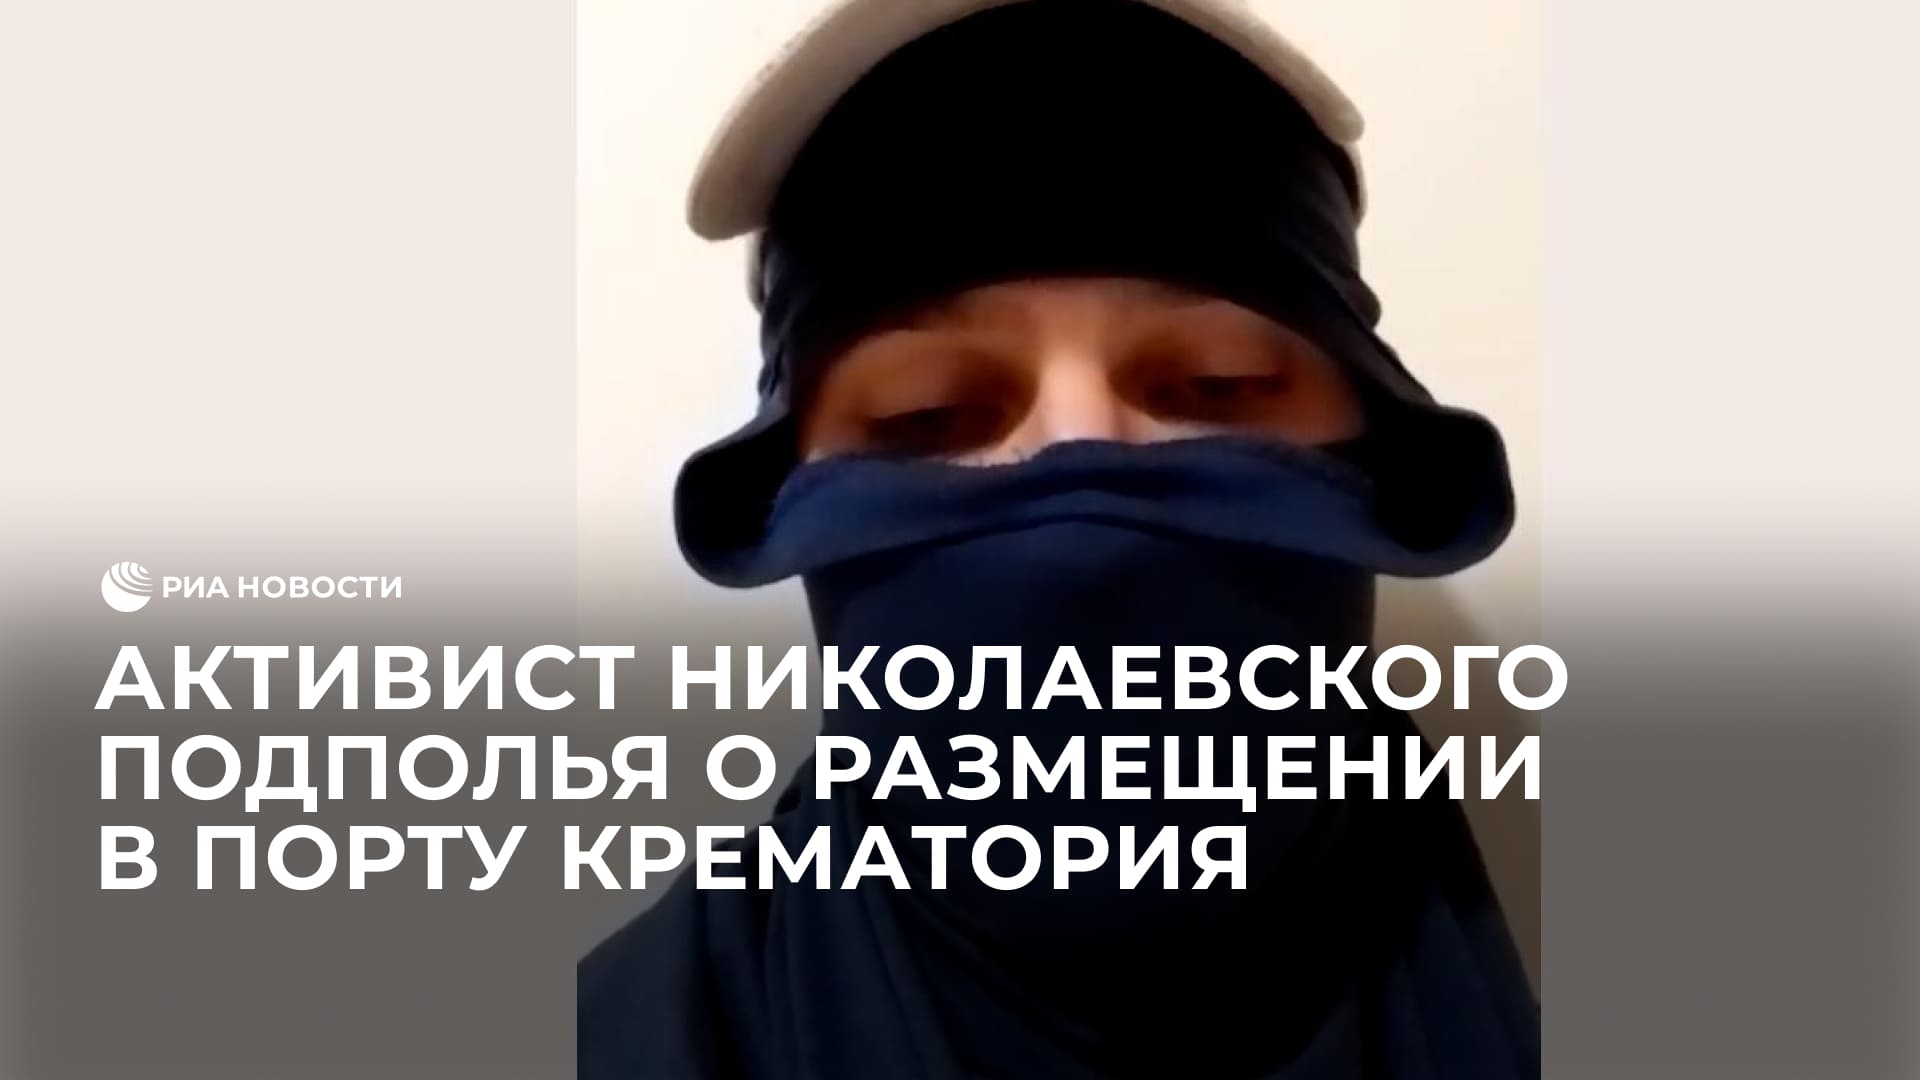 Активист Николаевского подполья о размещении в порту мобильного крематория